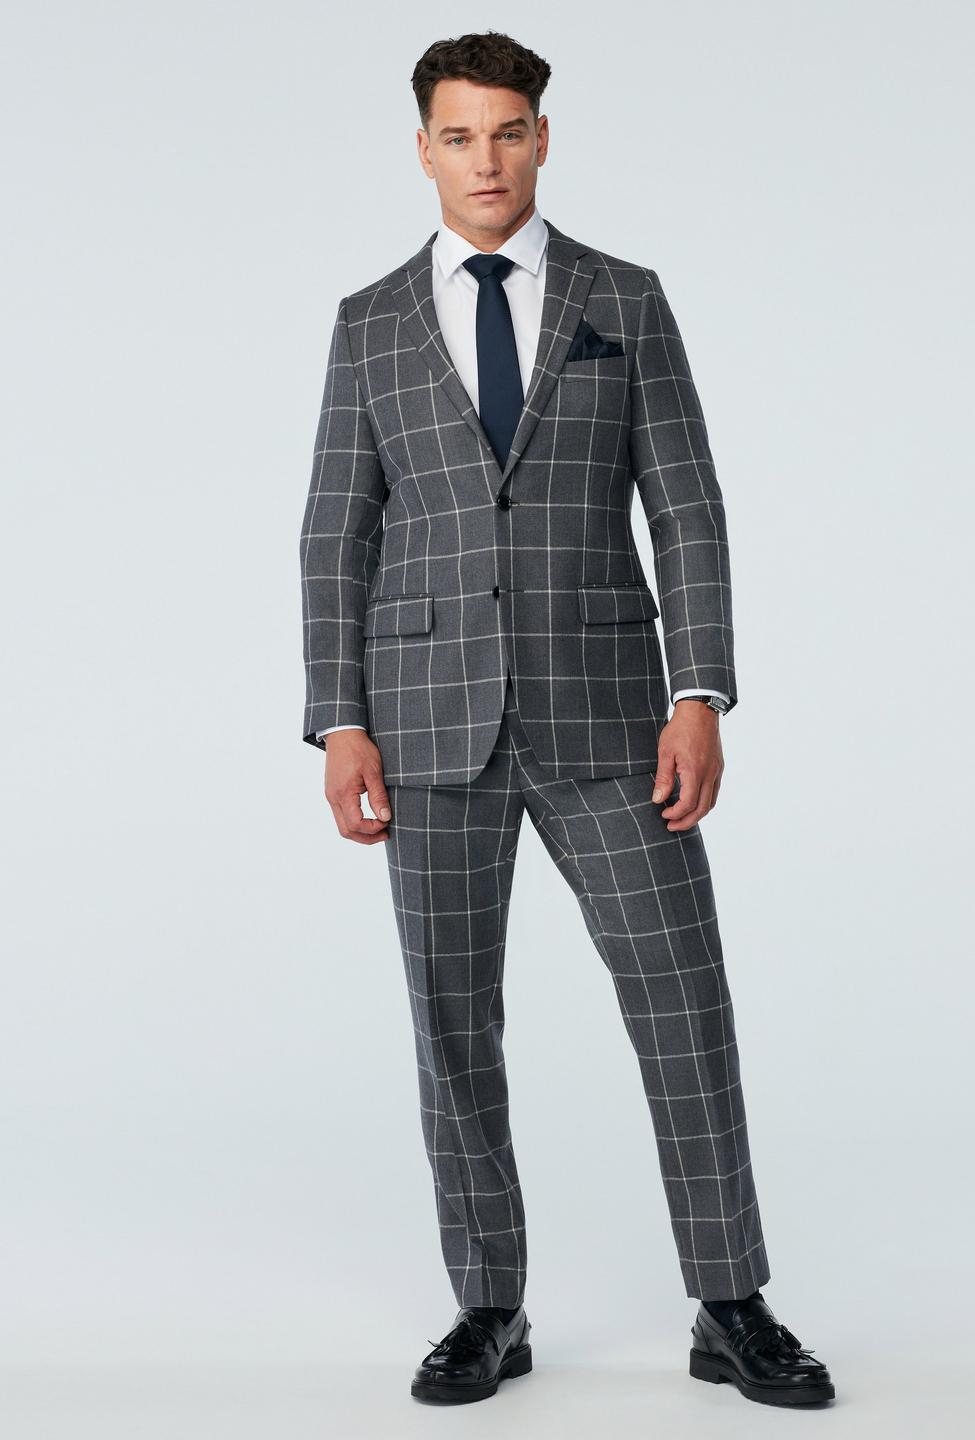 Durham Windowpane Dark Gray Suit